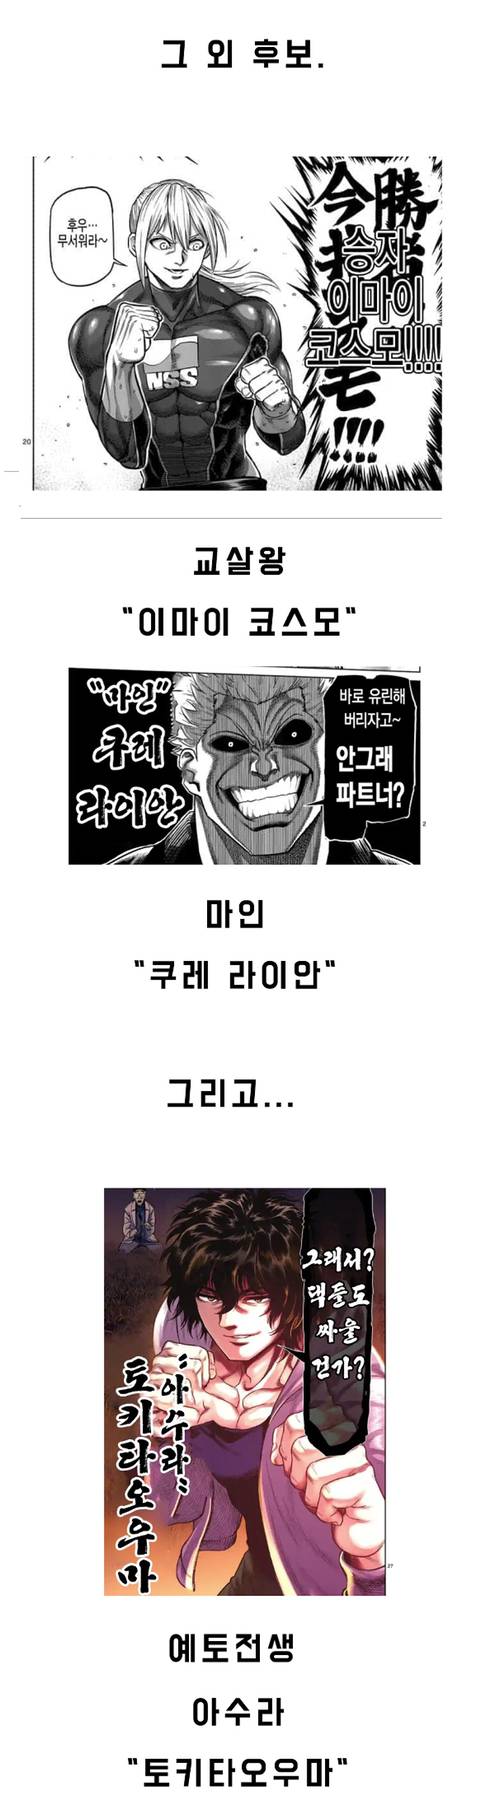 오메가 127 켄간 번역) 켄간